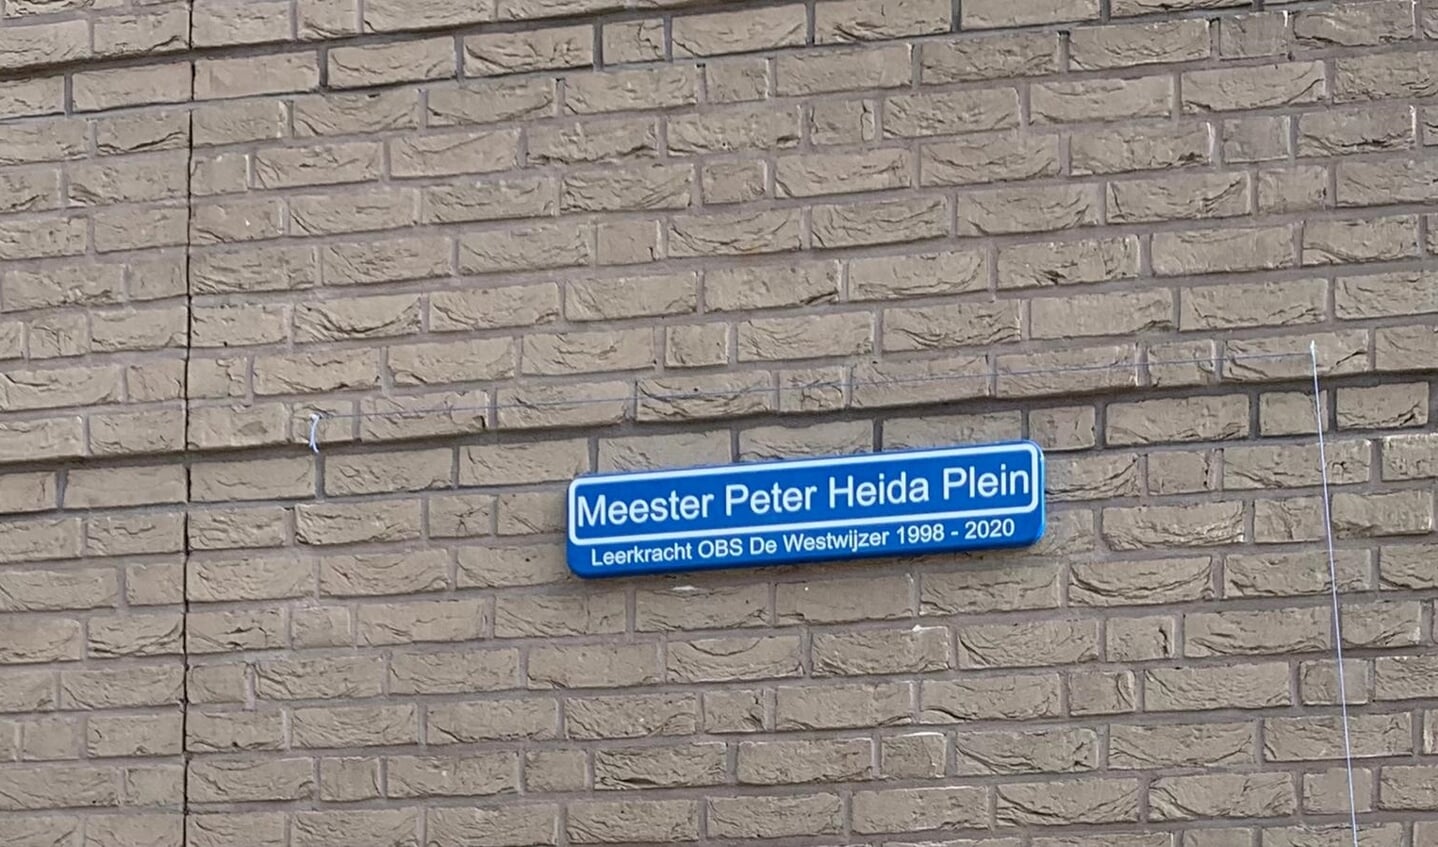 Het Meester Peter Heida Plein